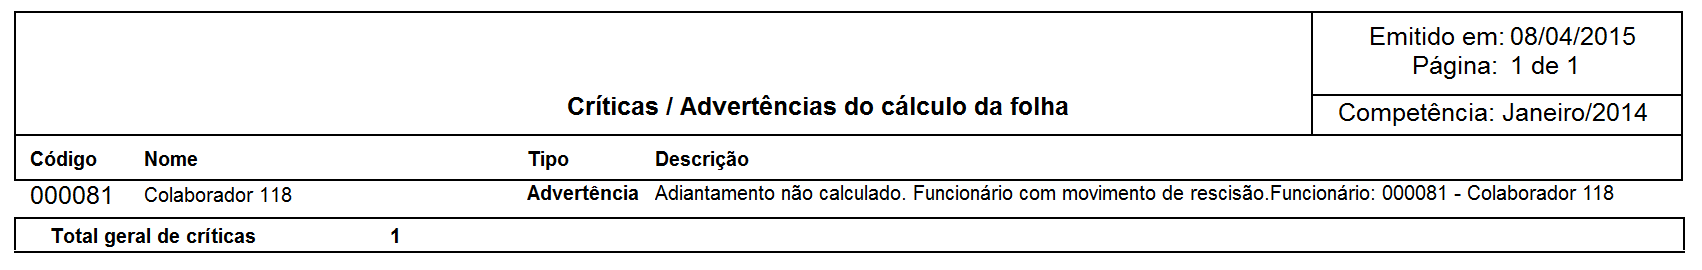 fp_criticas_advertencias_calculo_folha_2.png